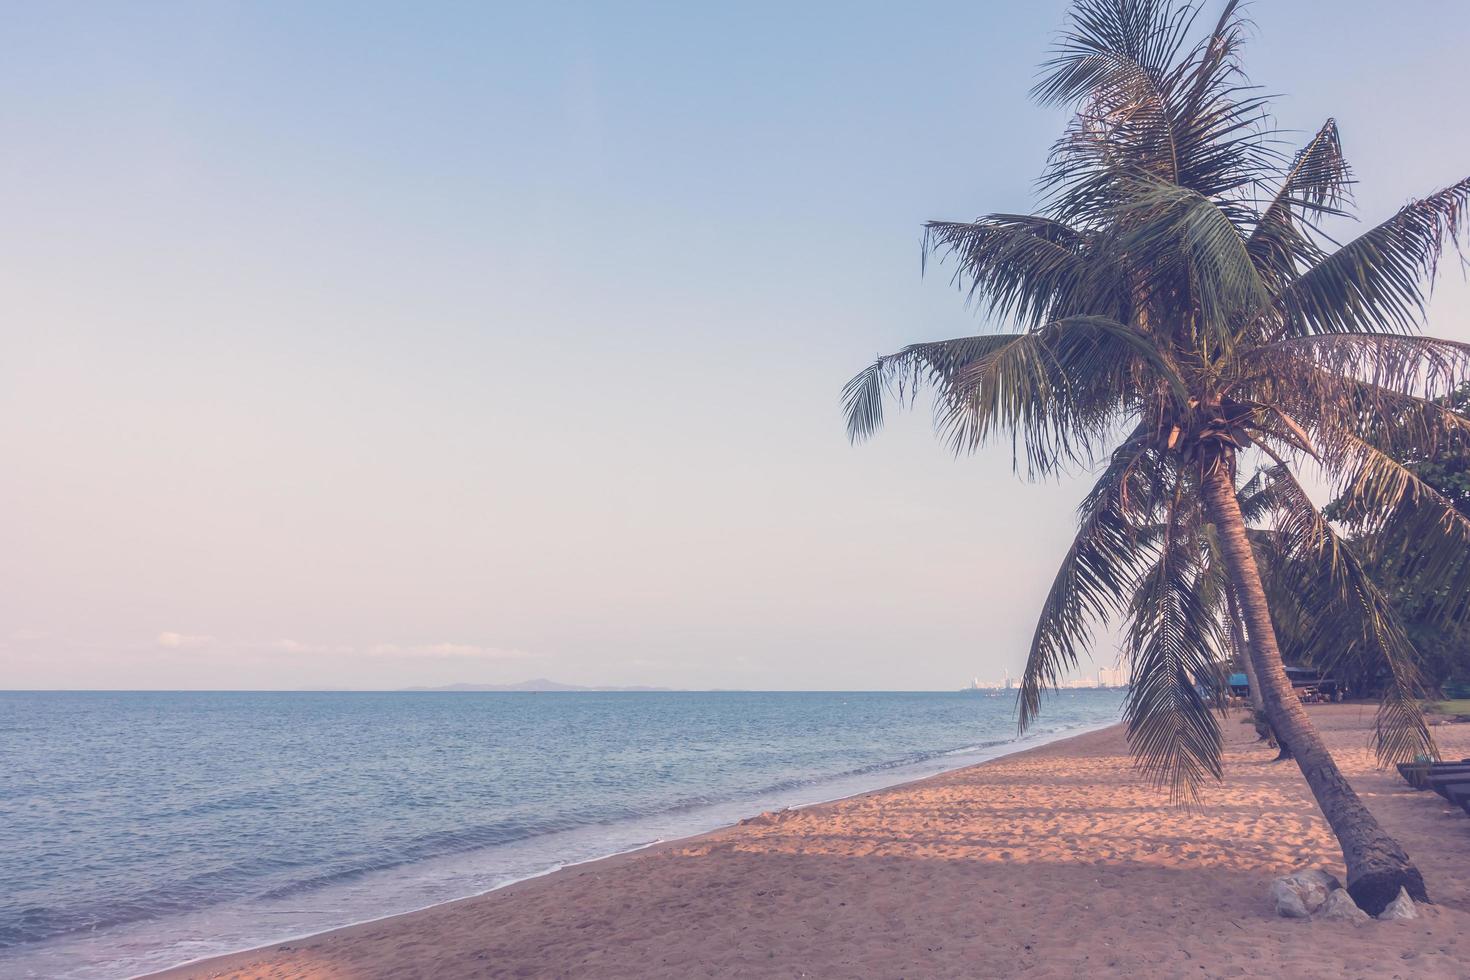 albero di cocco sulla spiaggia foto